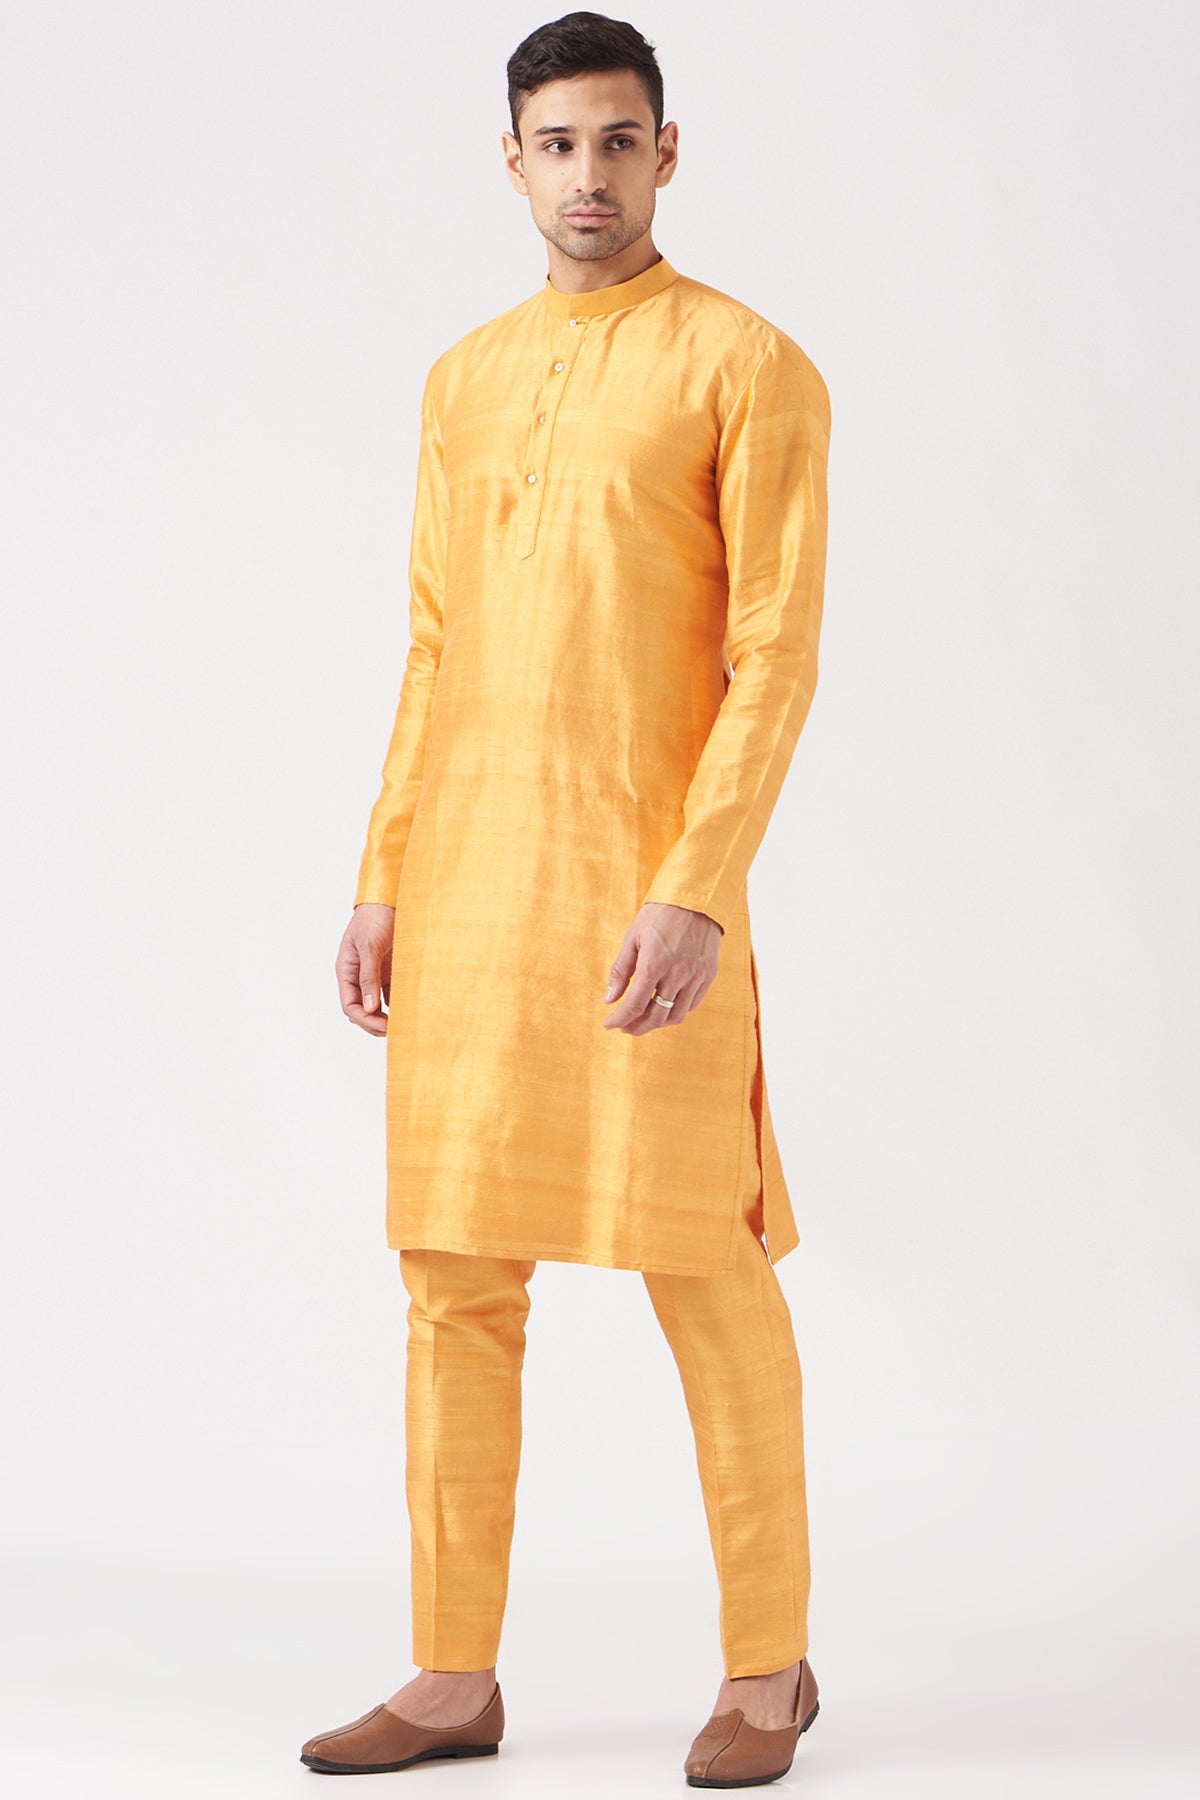 Yellow Pastiche Raw Silk Printed And Embellished Bundi With Yellow Raw Silk Kurta Set